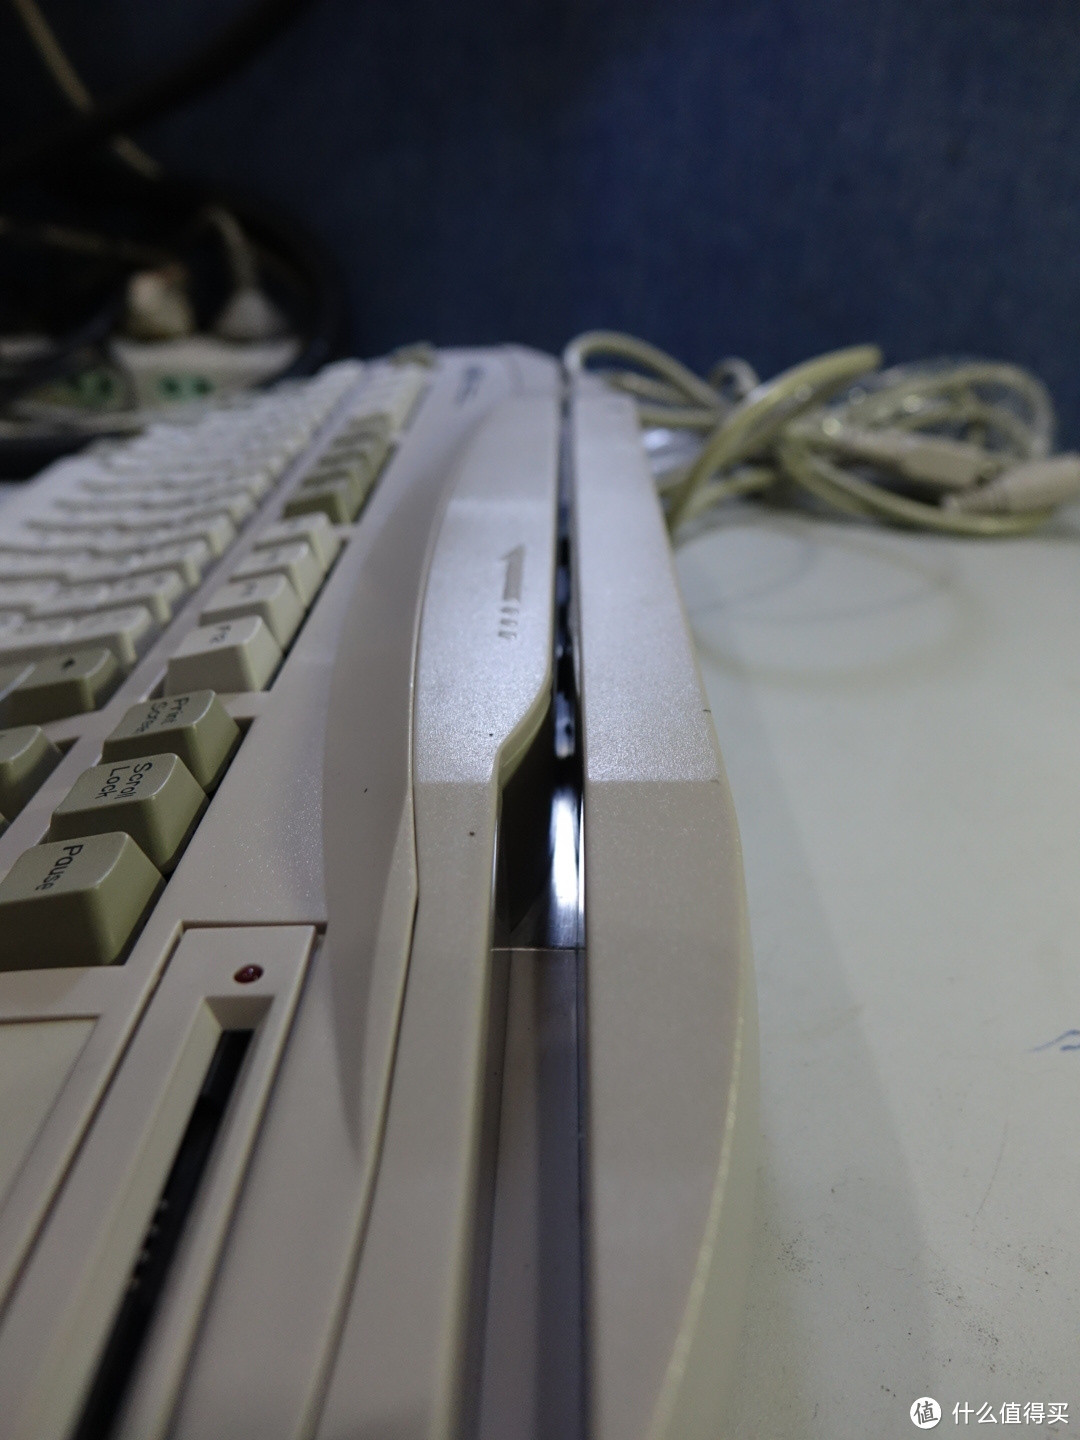 全新实达终端机械键盘star-102及其轻度改造